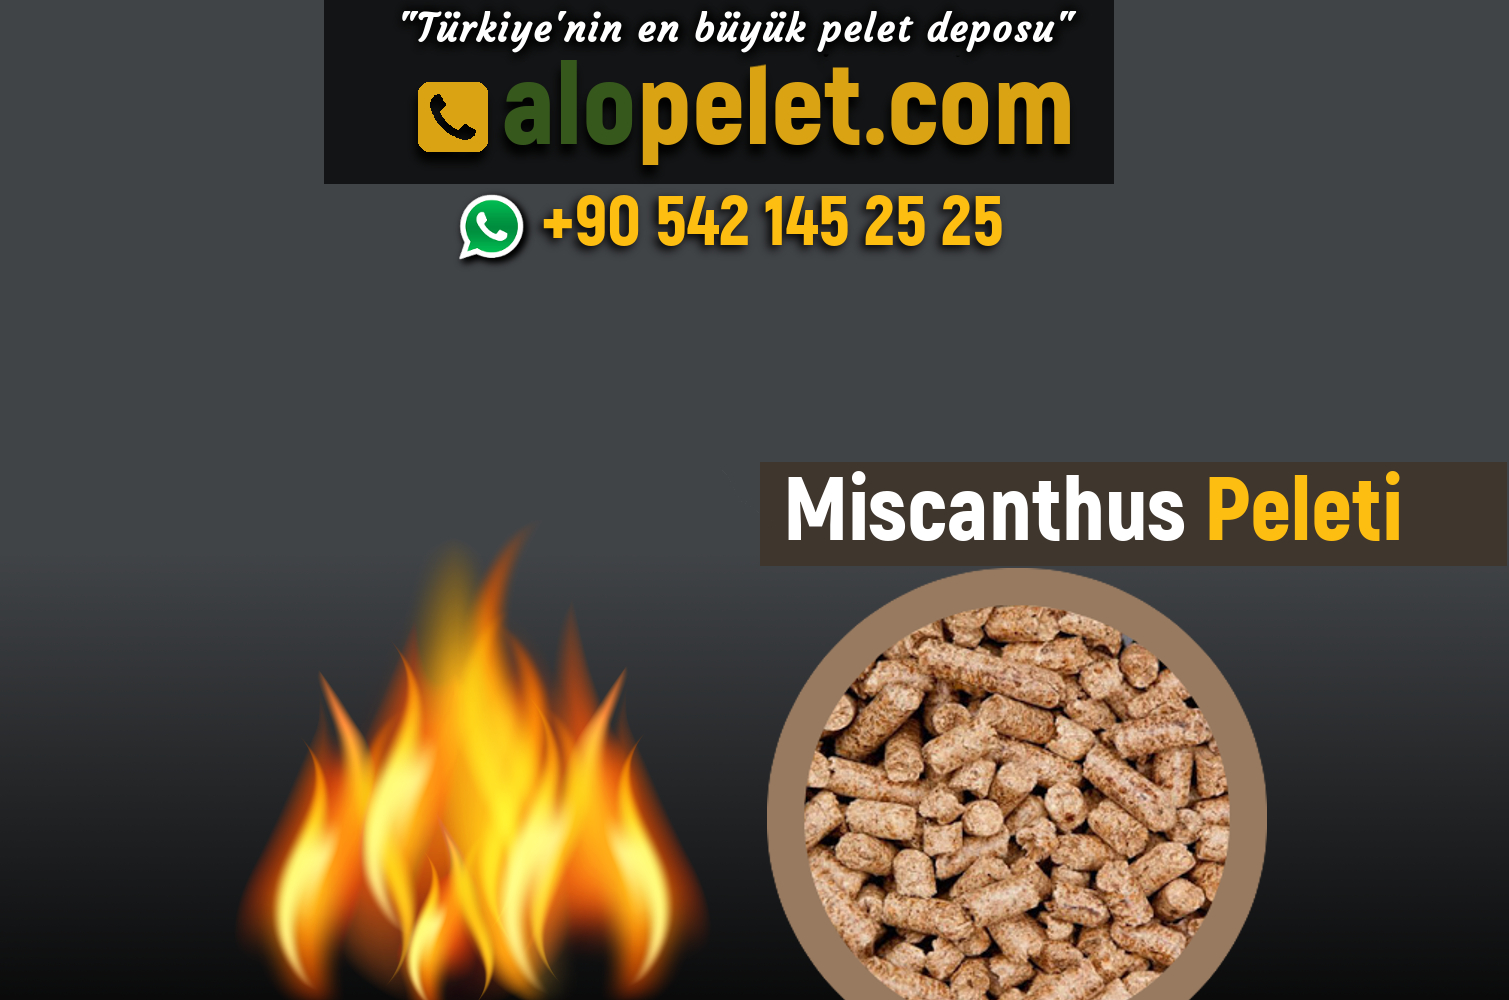 Miscanthus Peleti